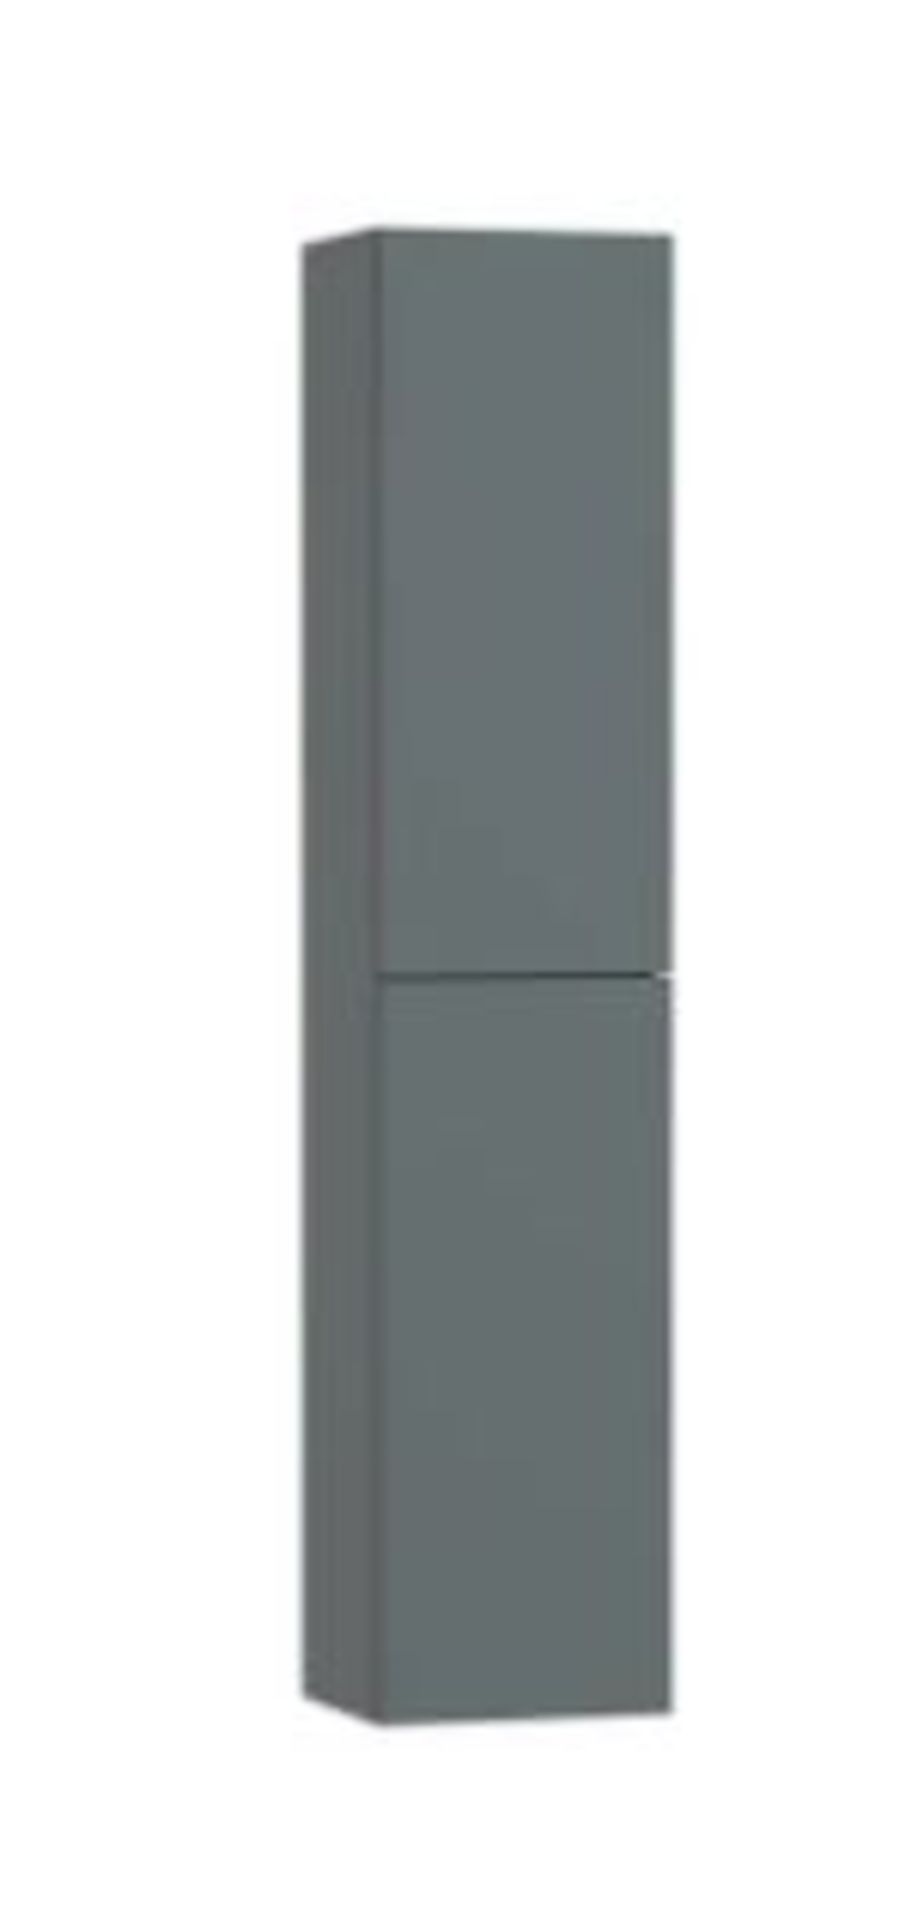 HiB Tall Storage Unit - Gloss Light Grey